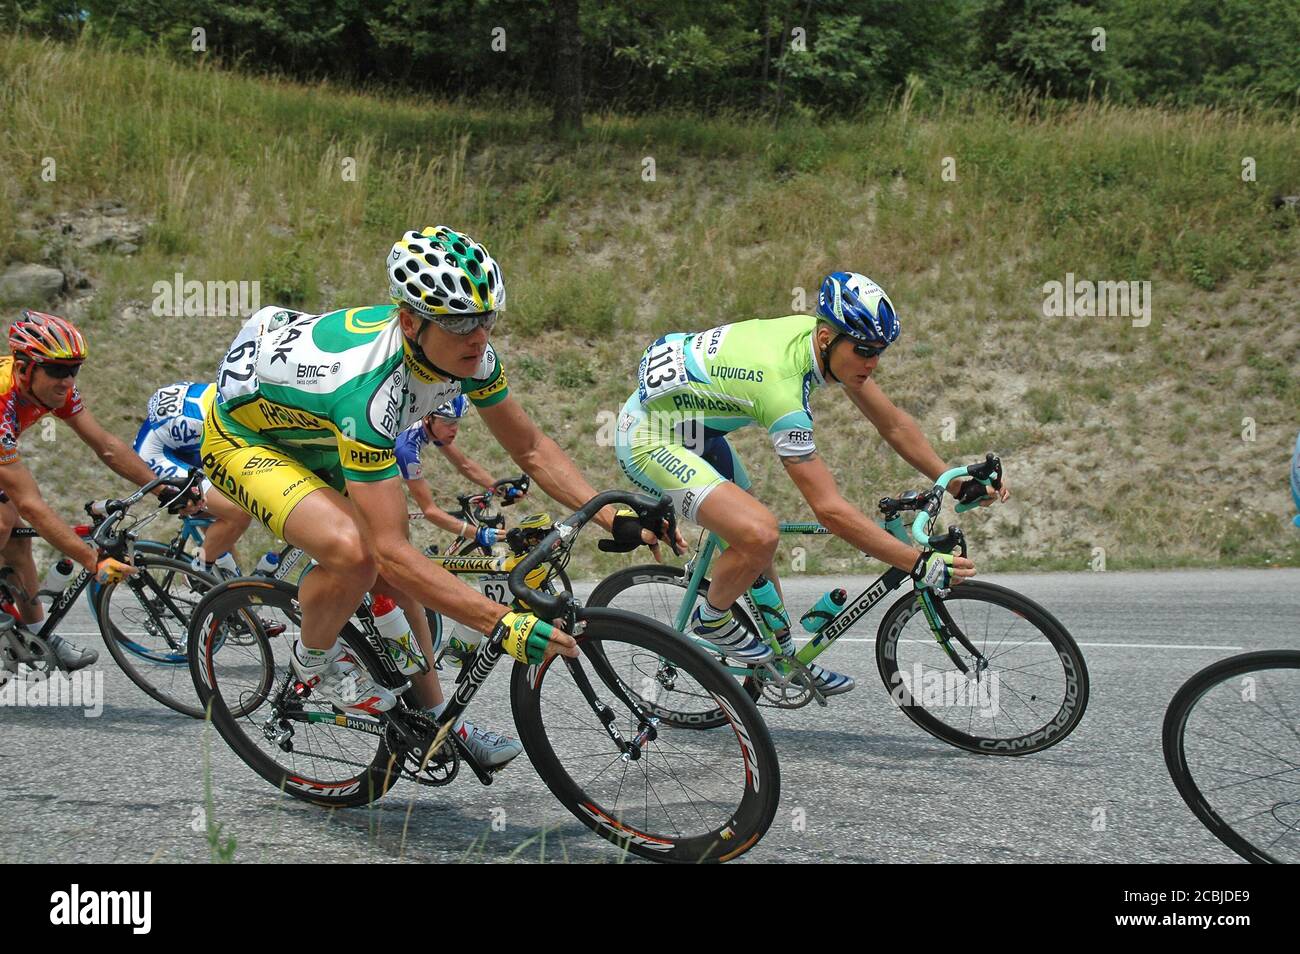 Bert Grabsch, (premier plan - numéro 62) le cycliste professionnel allemand en compétition pendant le Tour de France 2005 - Stage 11 : Courchevel - Briançon. Banque D'Images